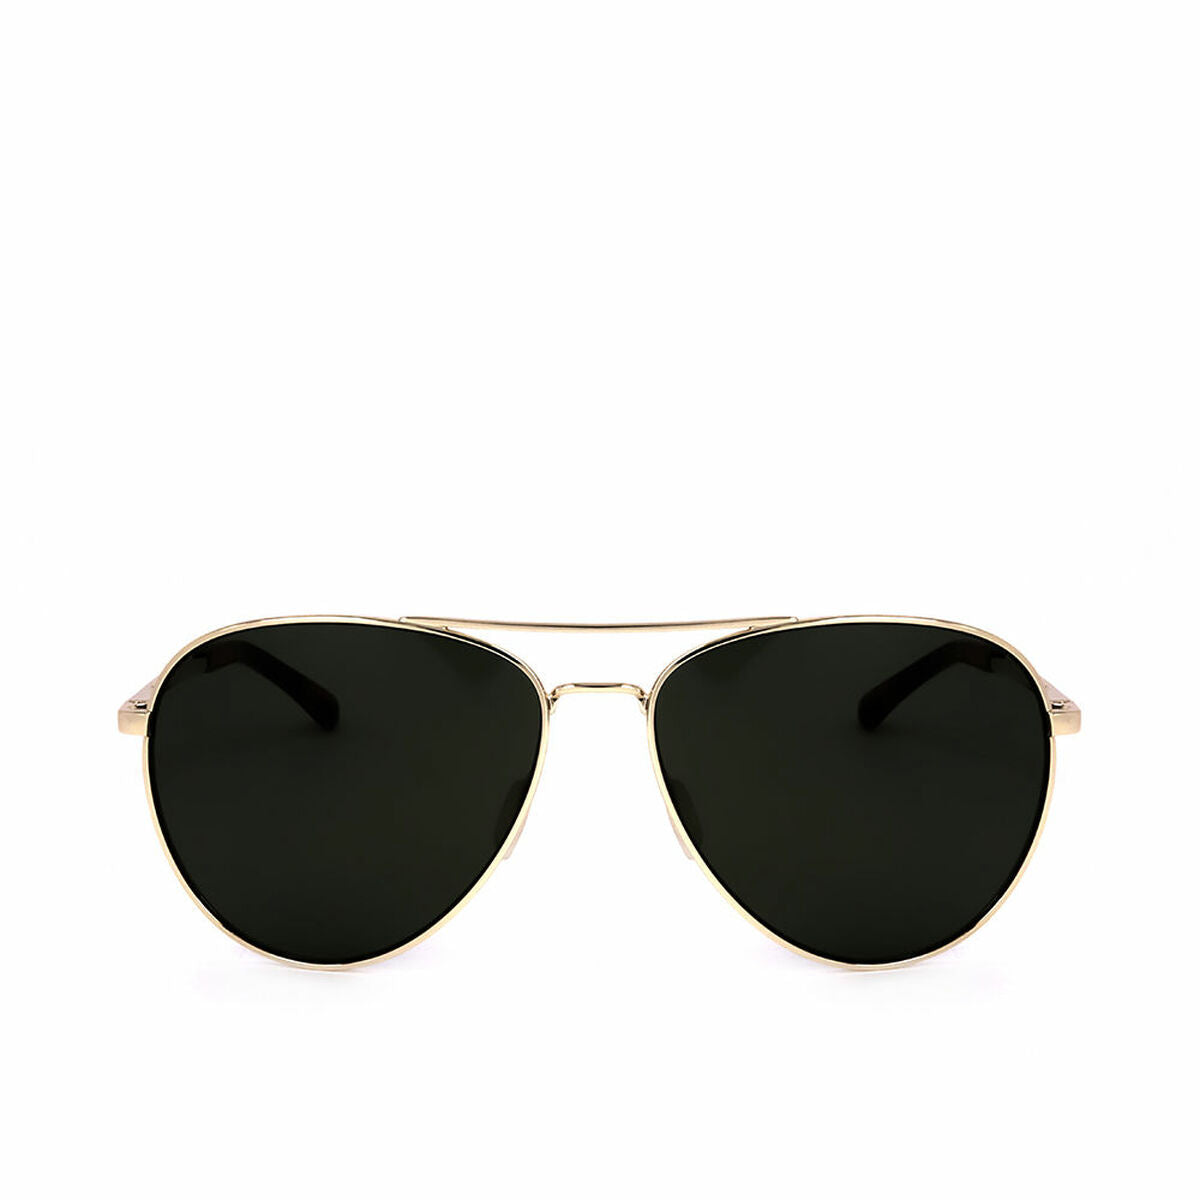 Kaufe Herrensonnenbrille Smith Layback G Gold ø 60 mm bei AWK Flagship um € 50.00